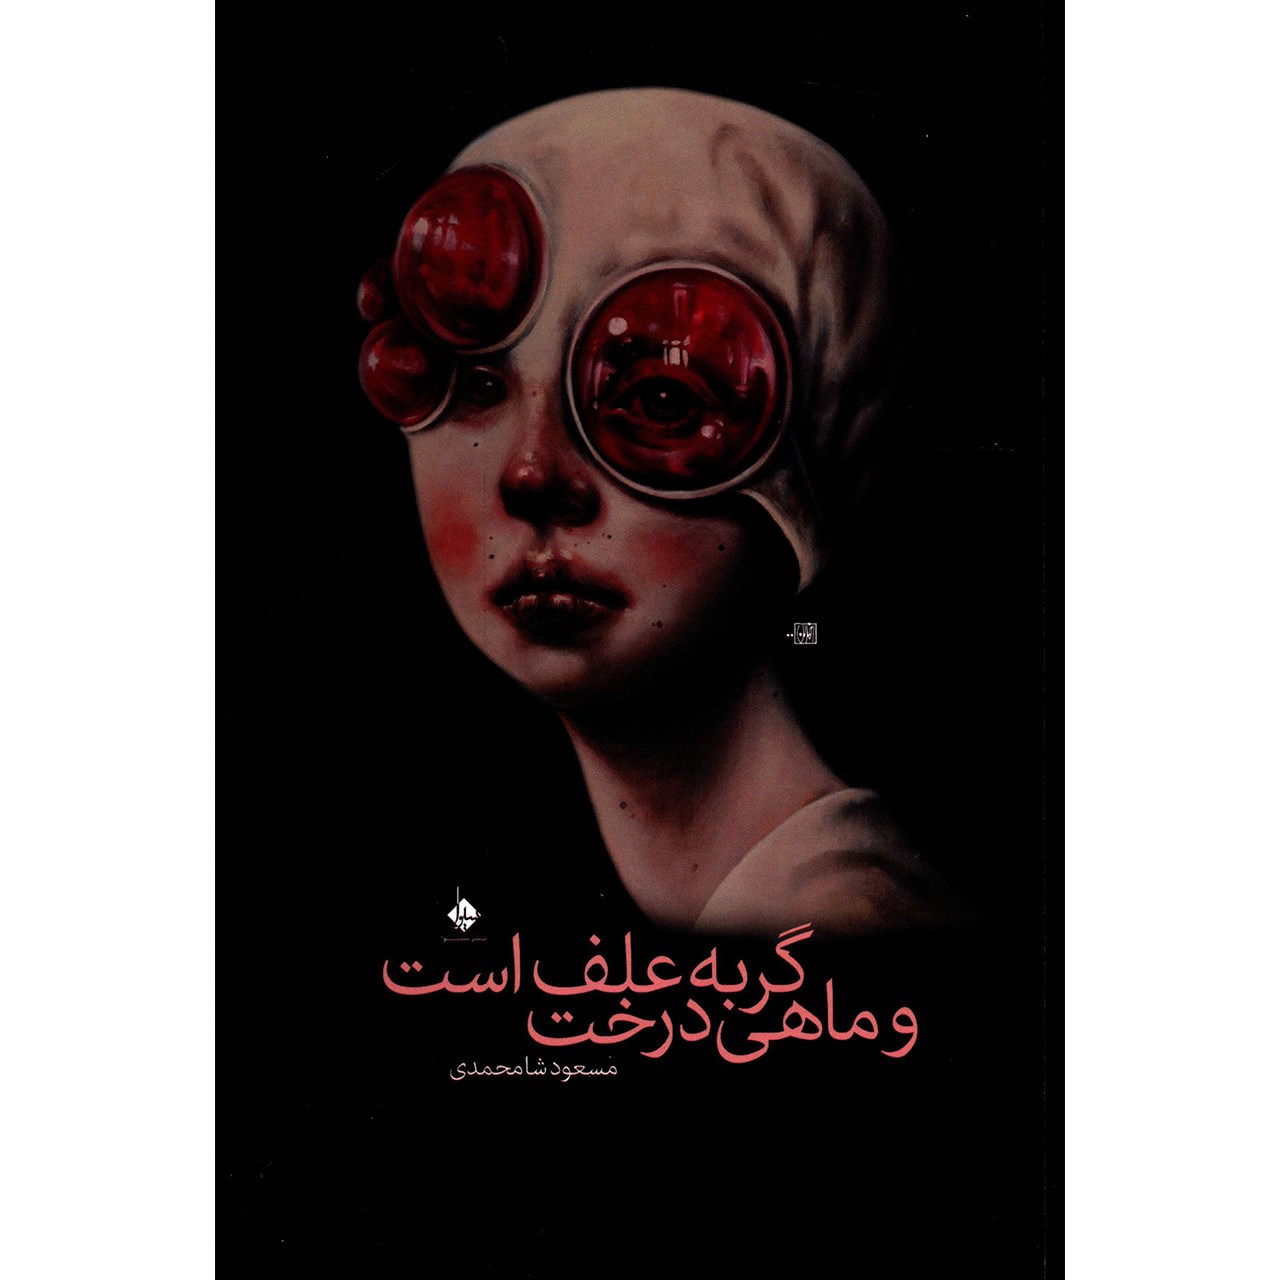 کتاب گربه علف است و ماهی درخت اثر مسعود شامحمدی